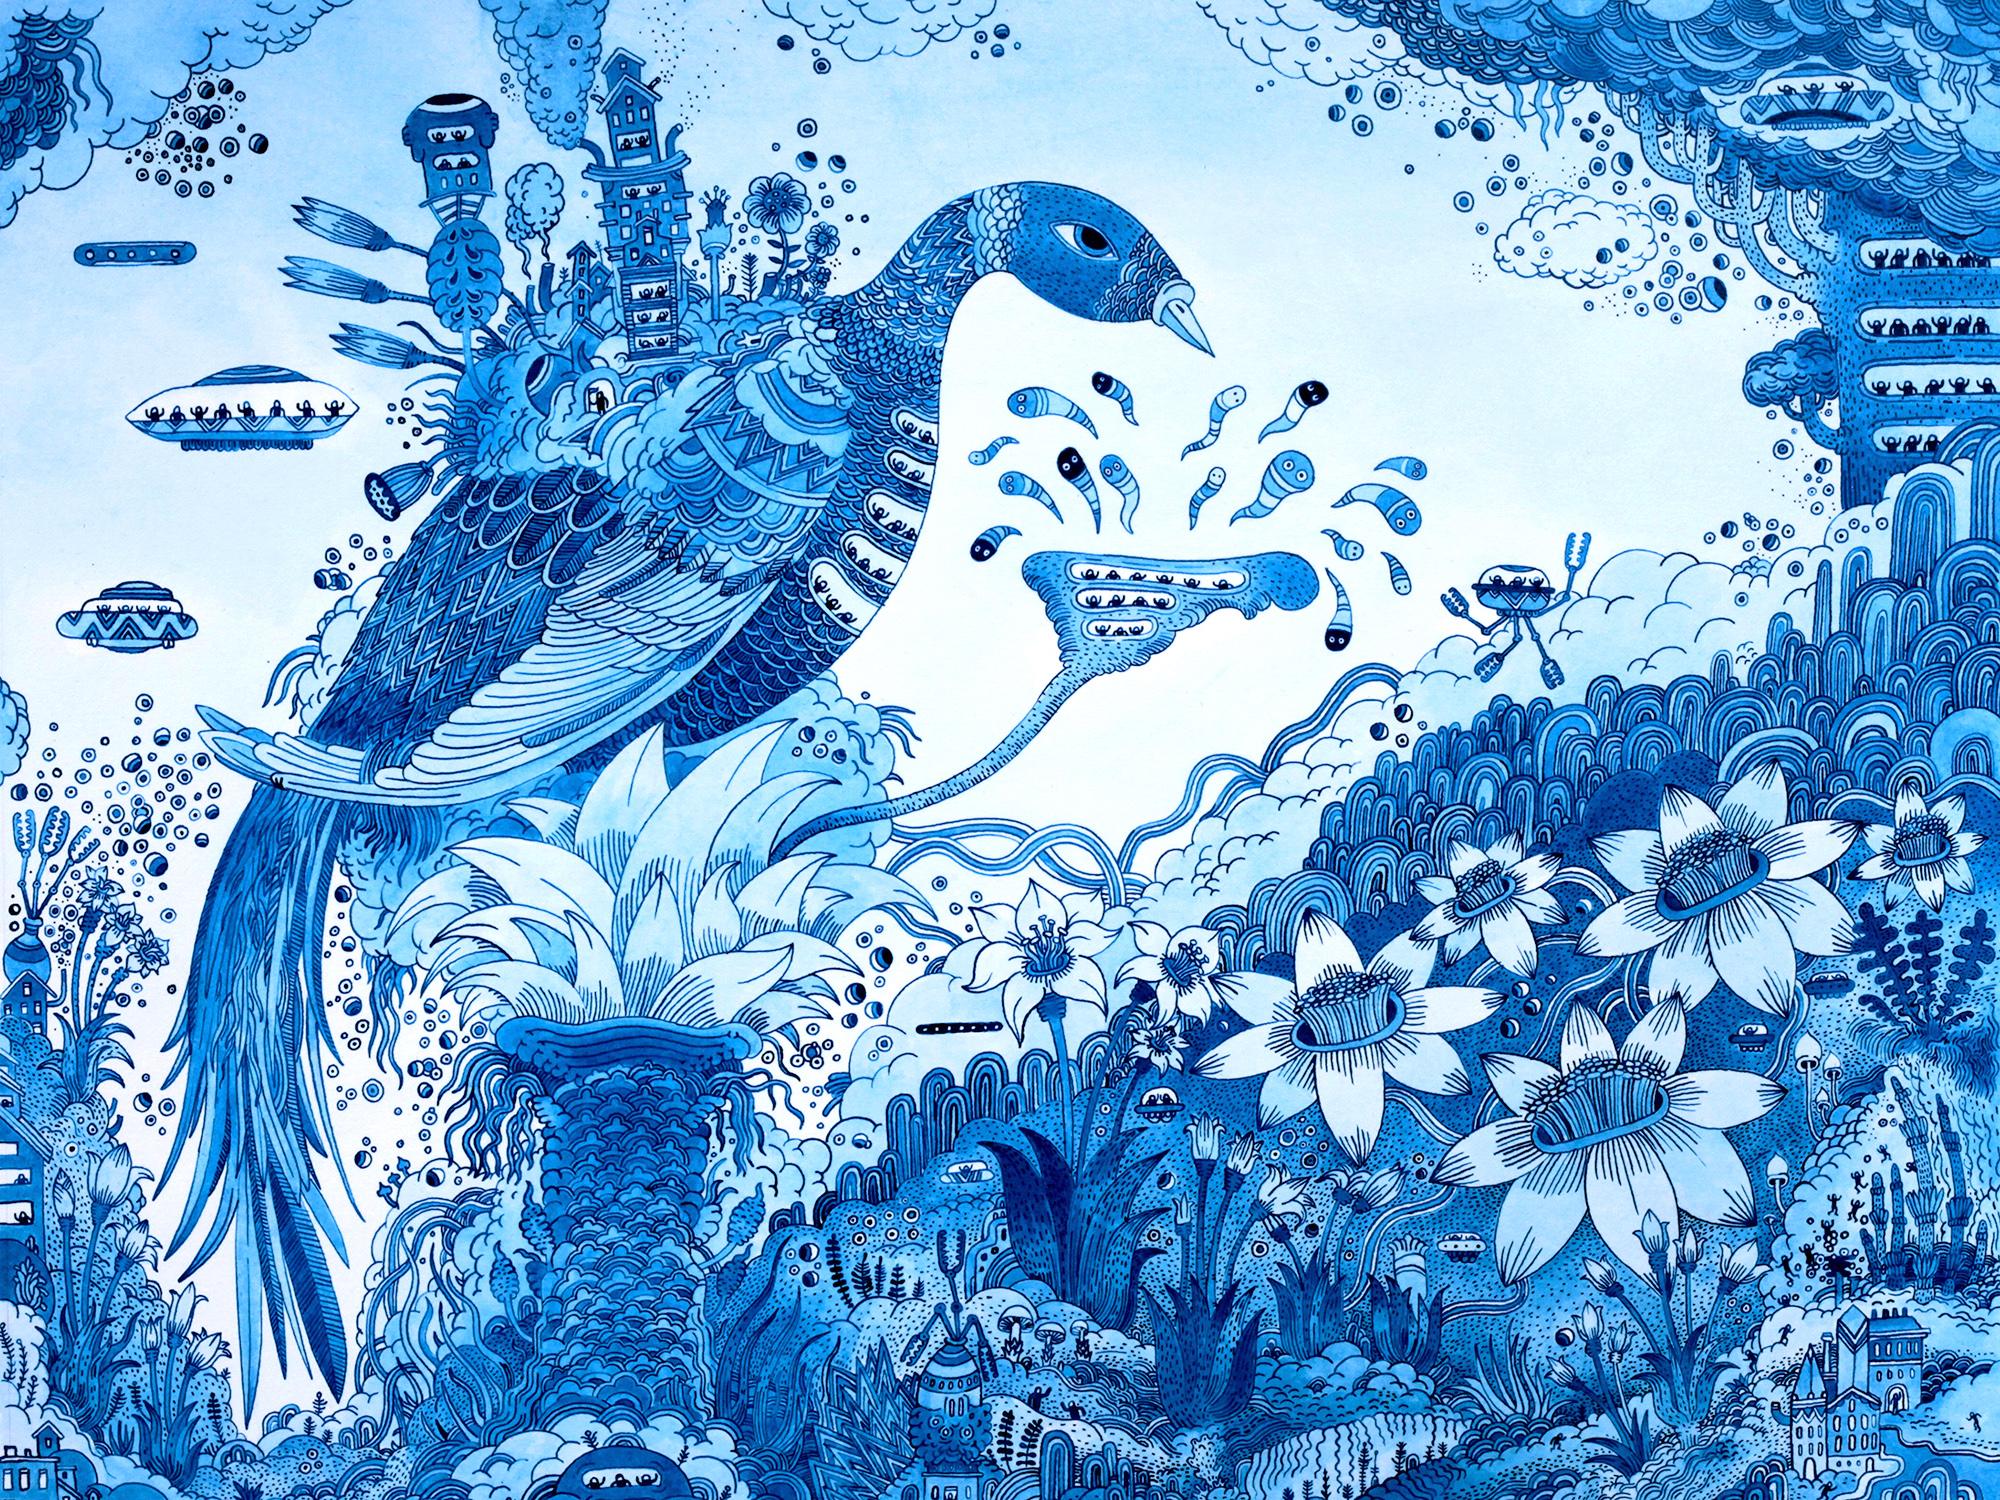 Peter Hamlin Animal Painting – Blauer Vogelbotic, Blauer Vogel, Blumen, Spacecraft, Skurrile Fantasie-Landschaft